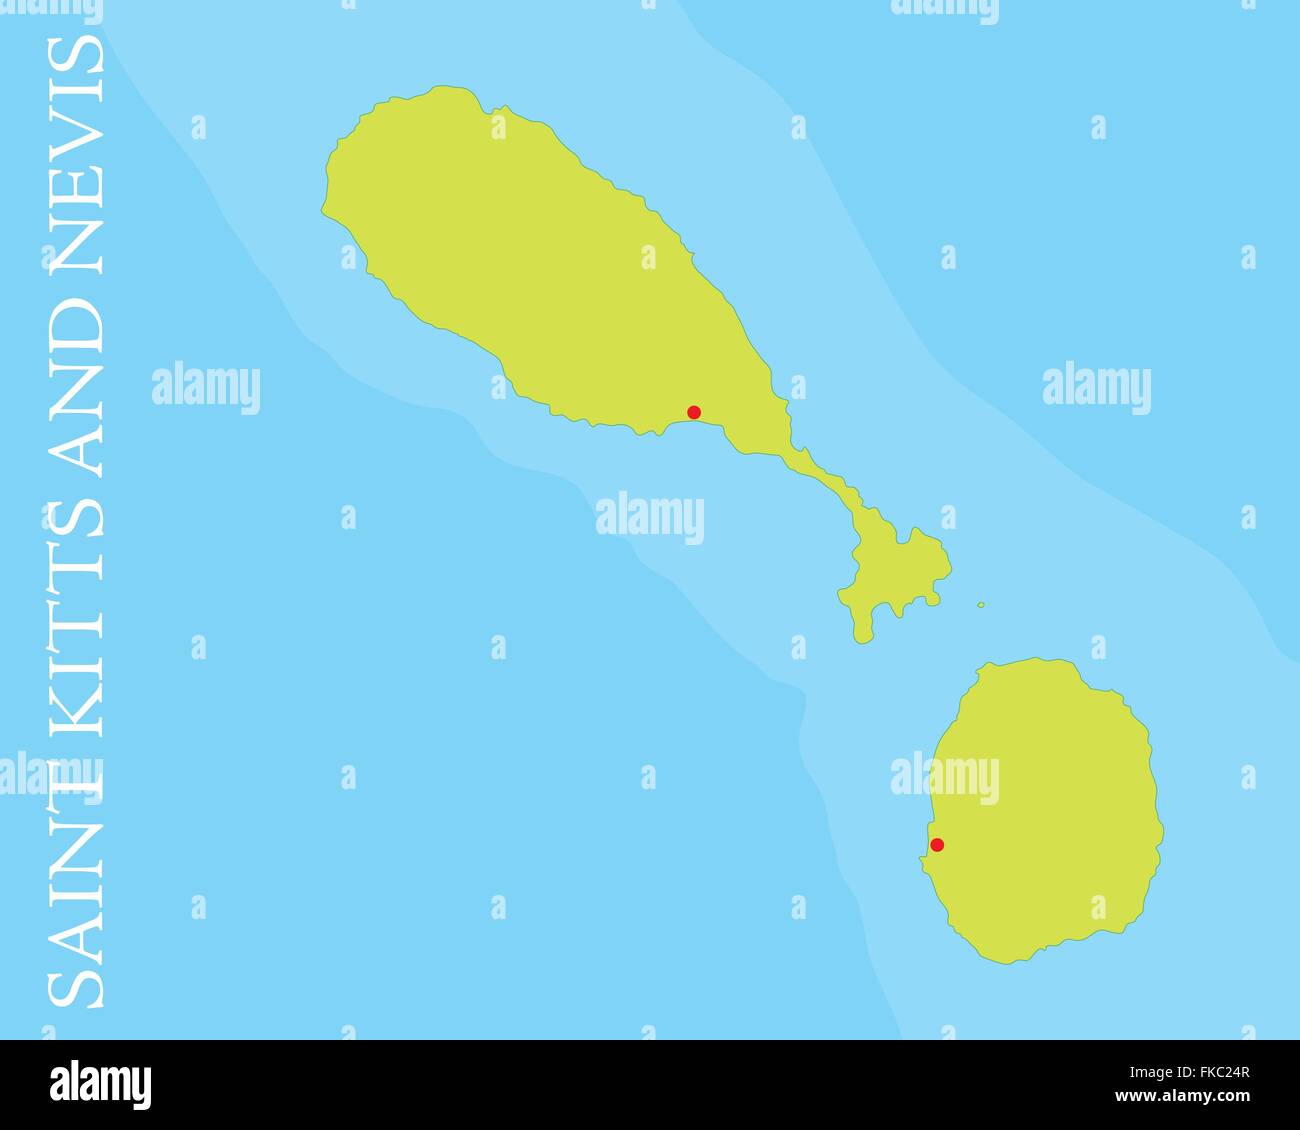 Plan de Saint Kitts et Nevis, îles de la mer des Caraïbes. Illustration de Vecteur